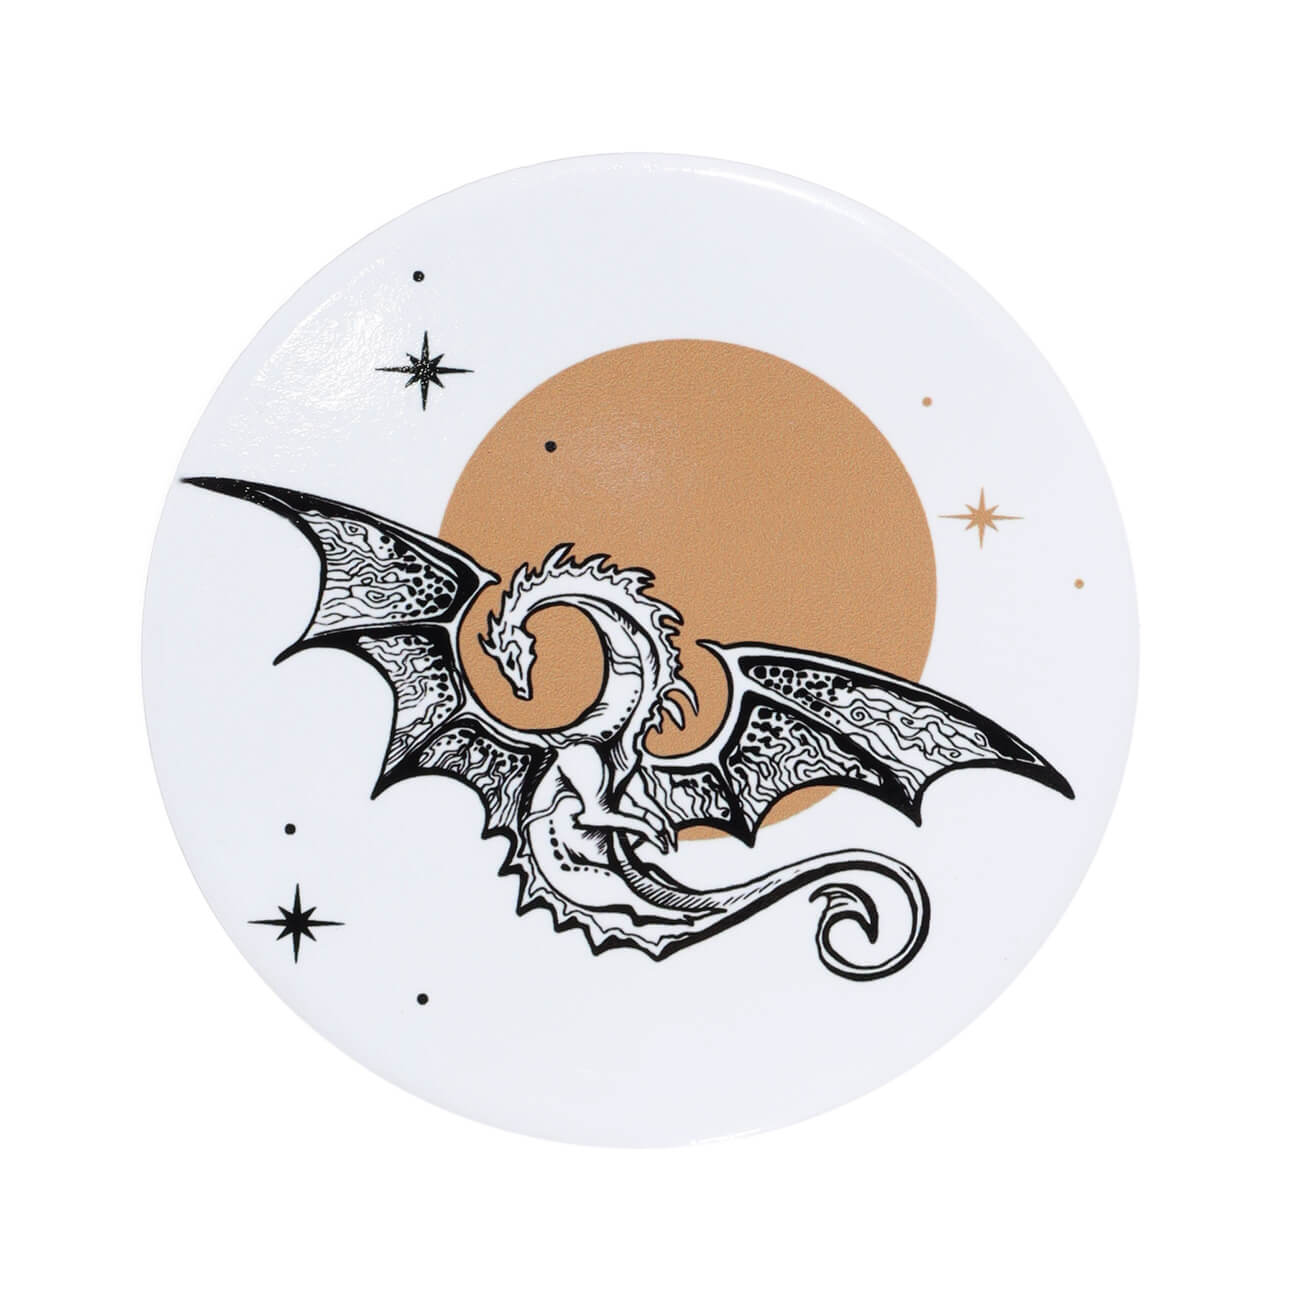 Подставка под кружку, 11 см, керамика/пробка, круглая, Дракон и звездное небо, Dragon rainira сувенир керамика подставка под кольца